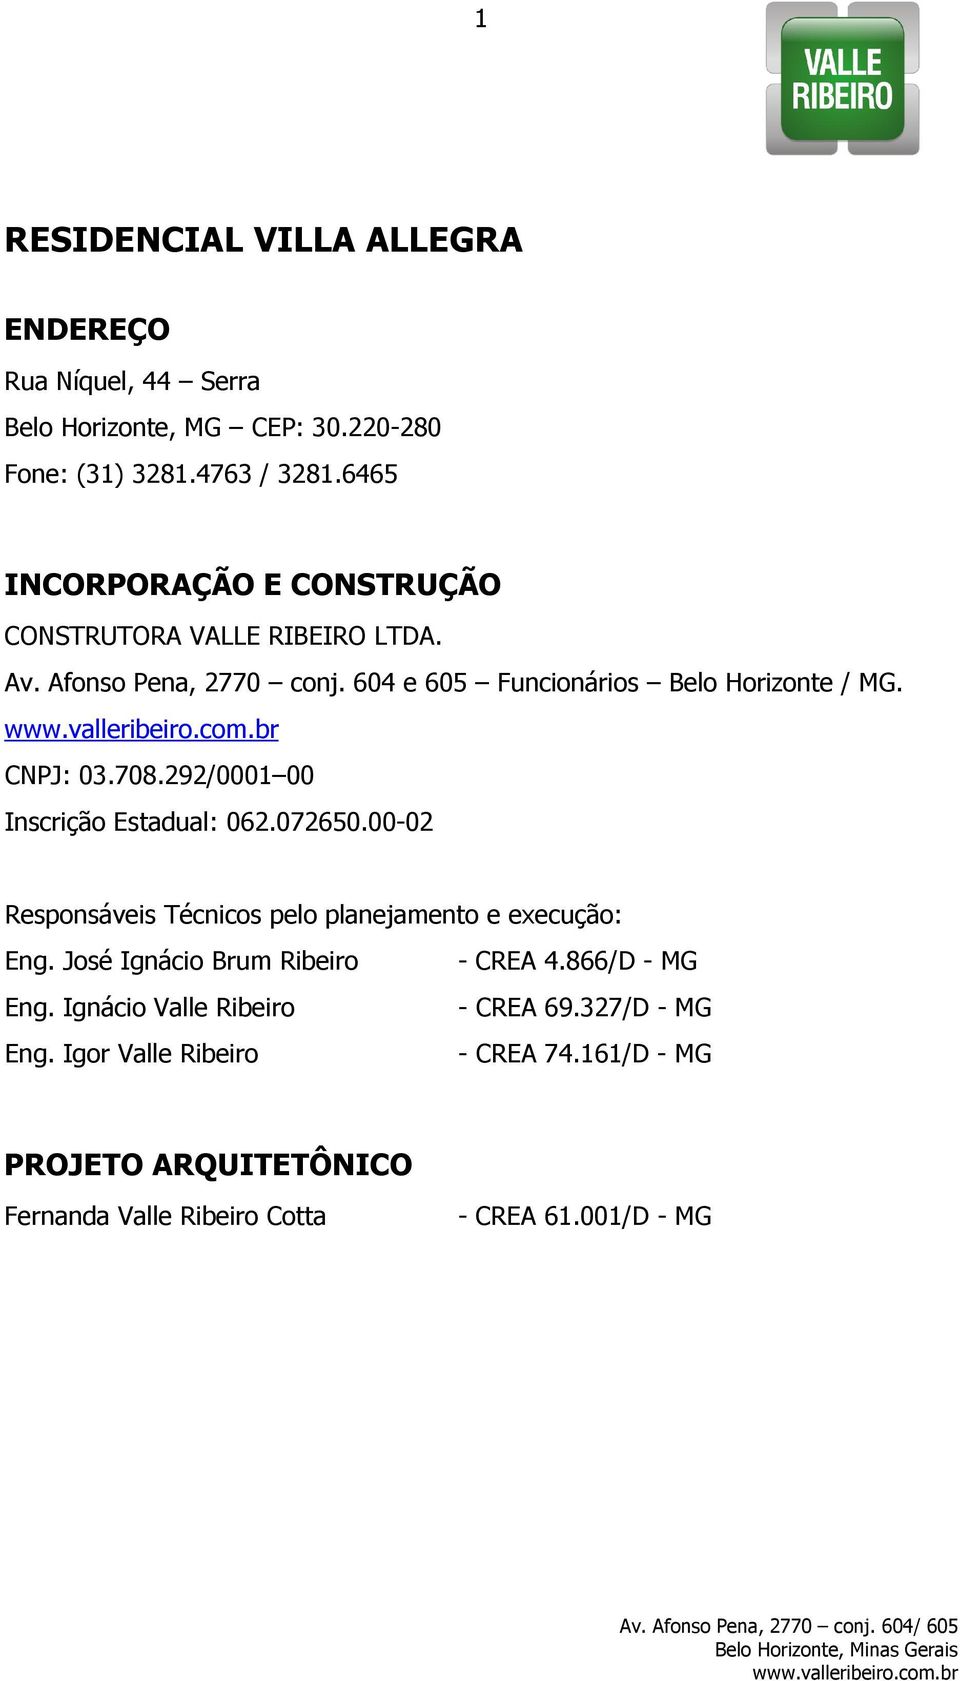 708.292/0001 00 Inscrição Estadual: 062.072650.00-02 Responsáveis Técnicos pelo planejamento e execução: Eng. José Ignácio Brum Ribeiro - CREA 4.